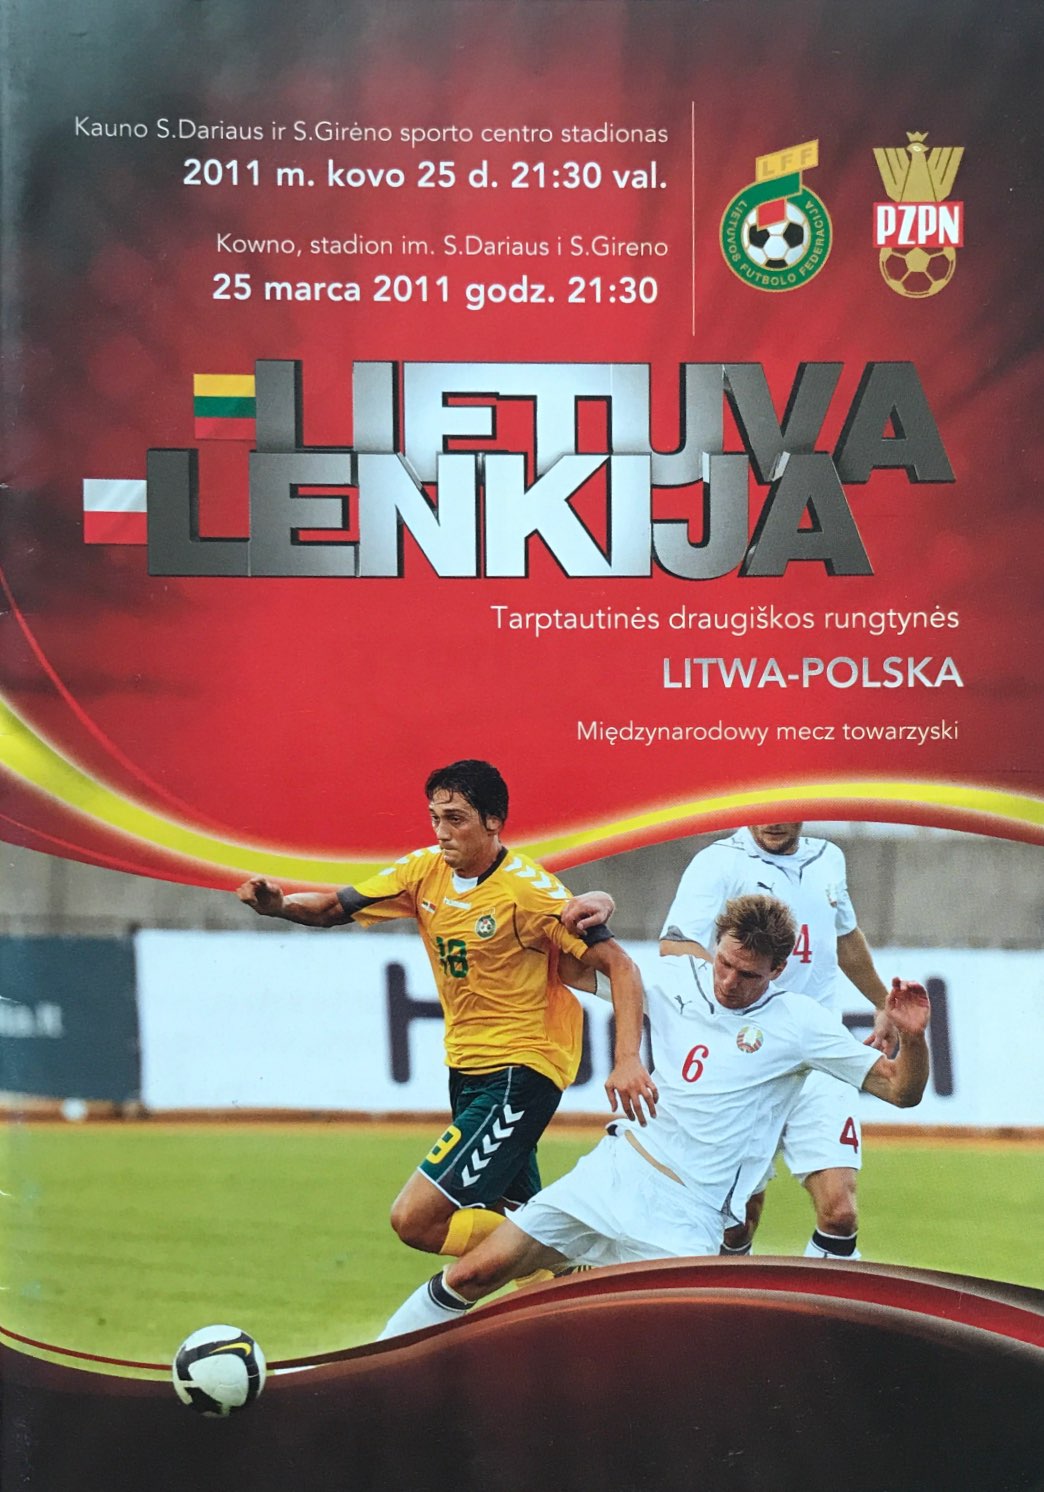 Program meczowy Litwa - Polska 2:0 (25.03.2011).